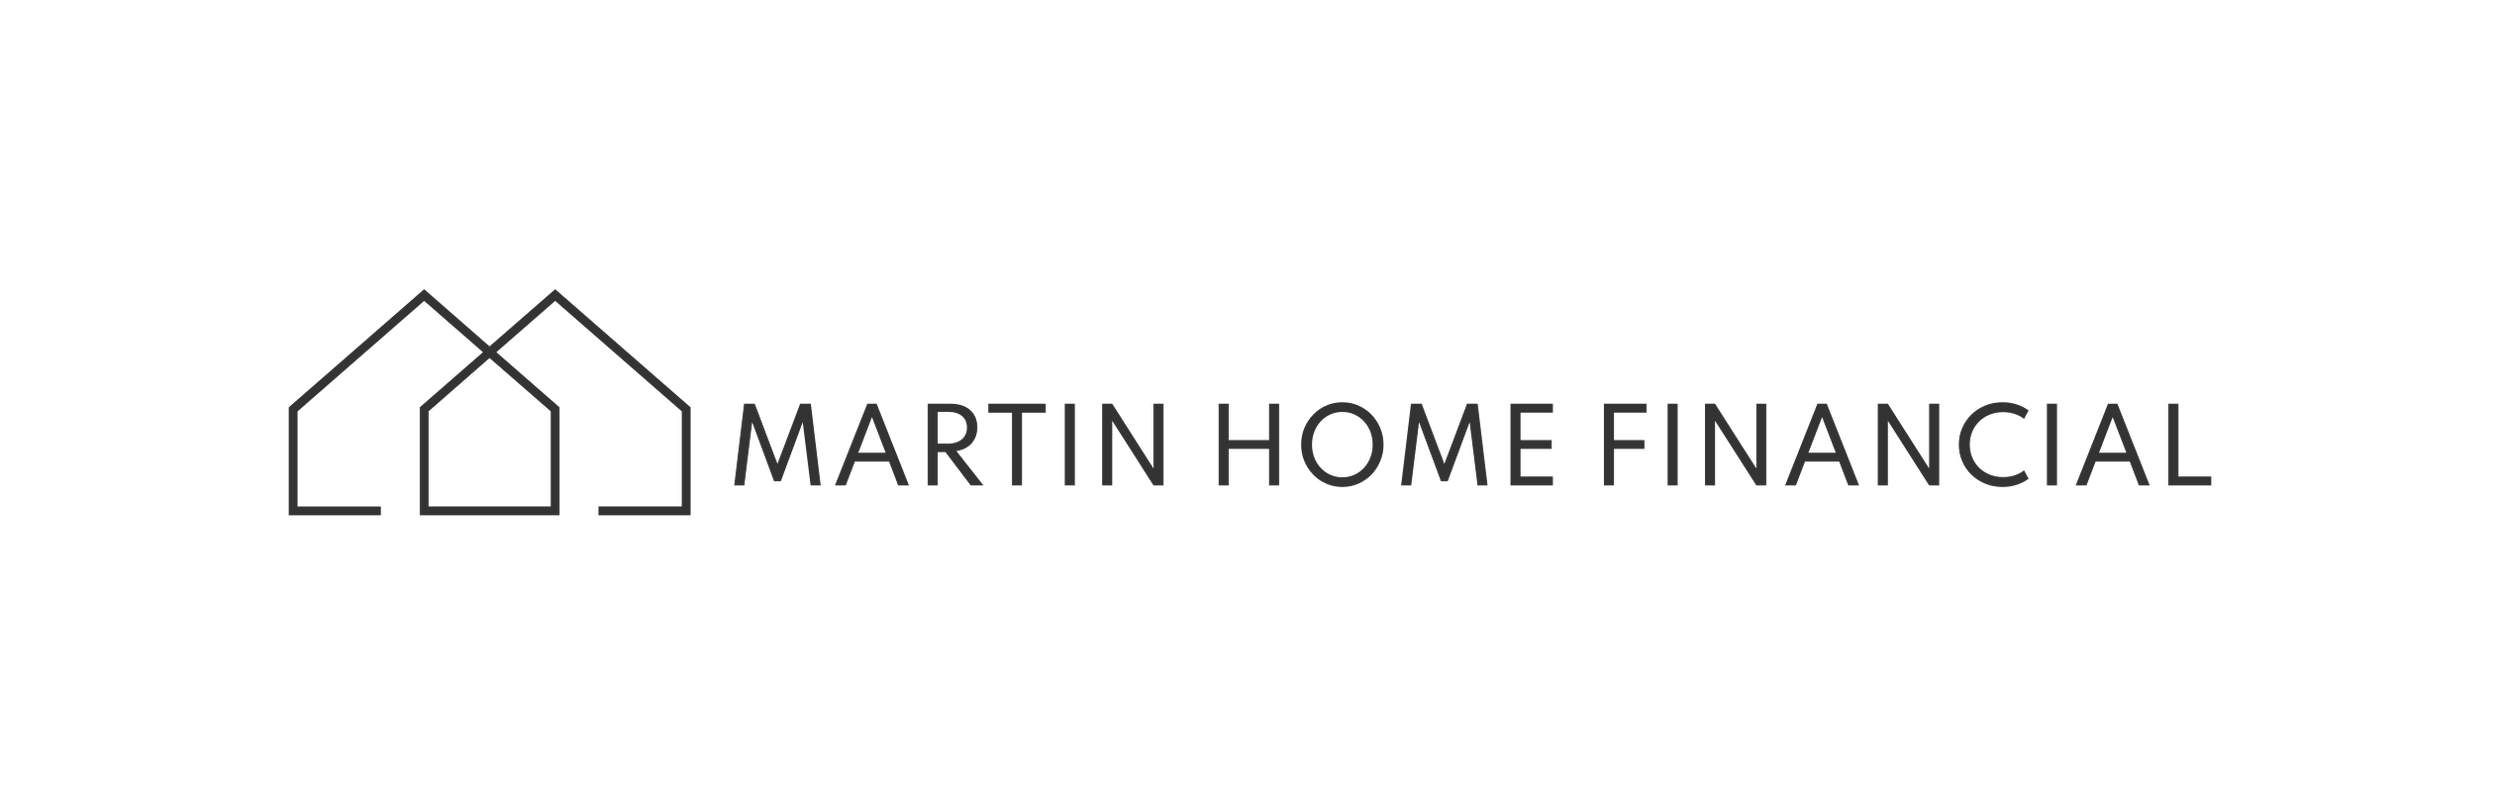 Martin Home Financial